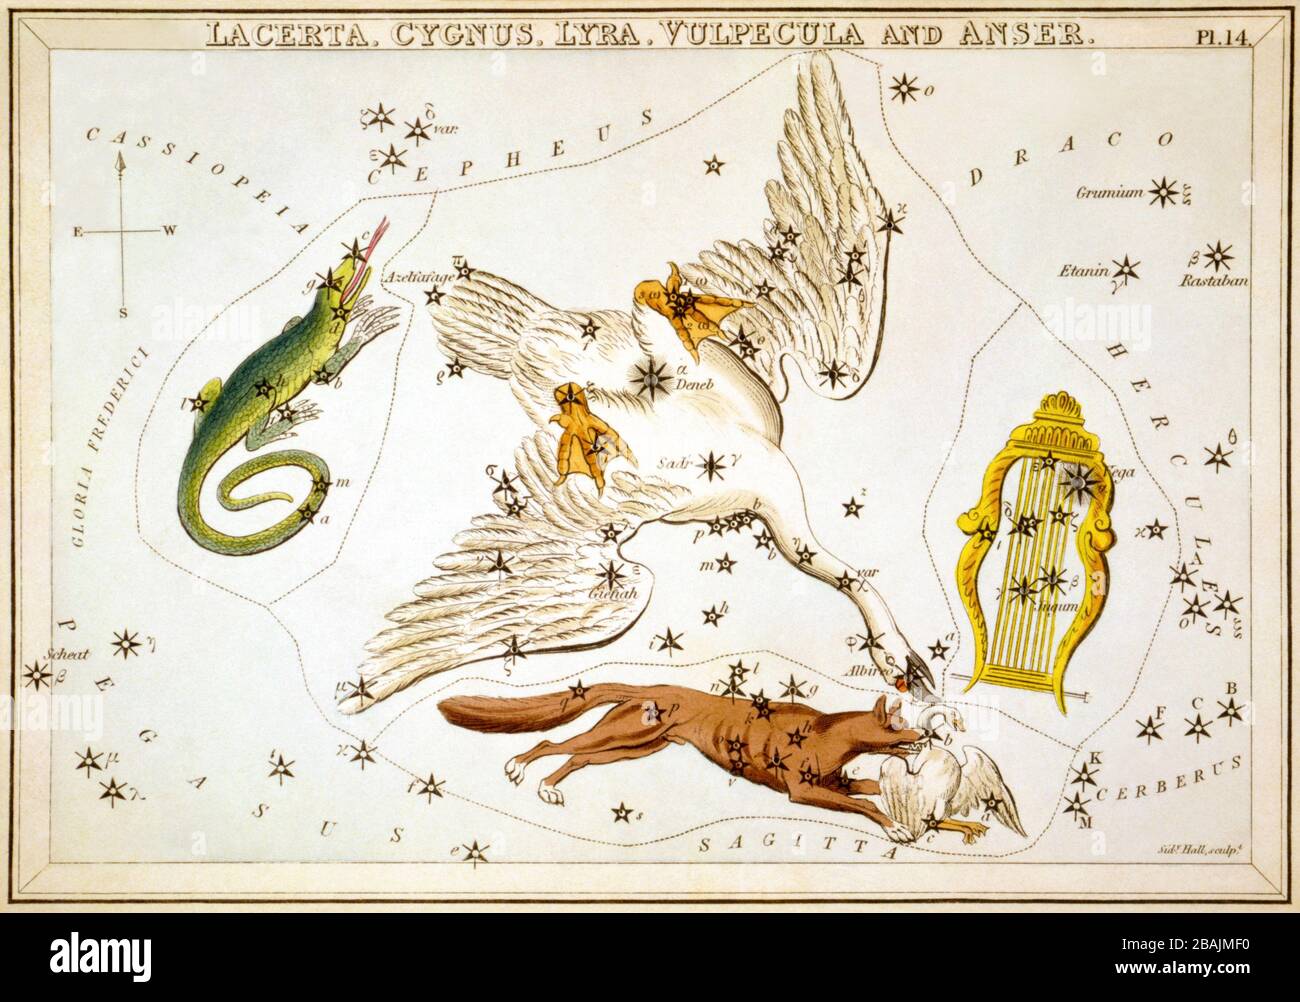 Lacerta, Cygnus, Lyra, Vulpecula et Anser, carte céleste, partie de l’ensemble miroir d’Urania, une vue des cieux, gravée par la salle Sidney, publiée pour la première fois en 1824 Banque D'Images